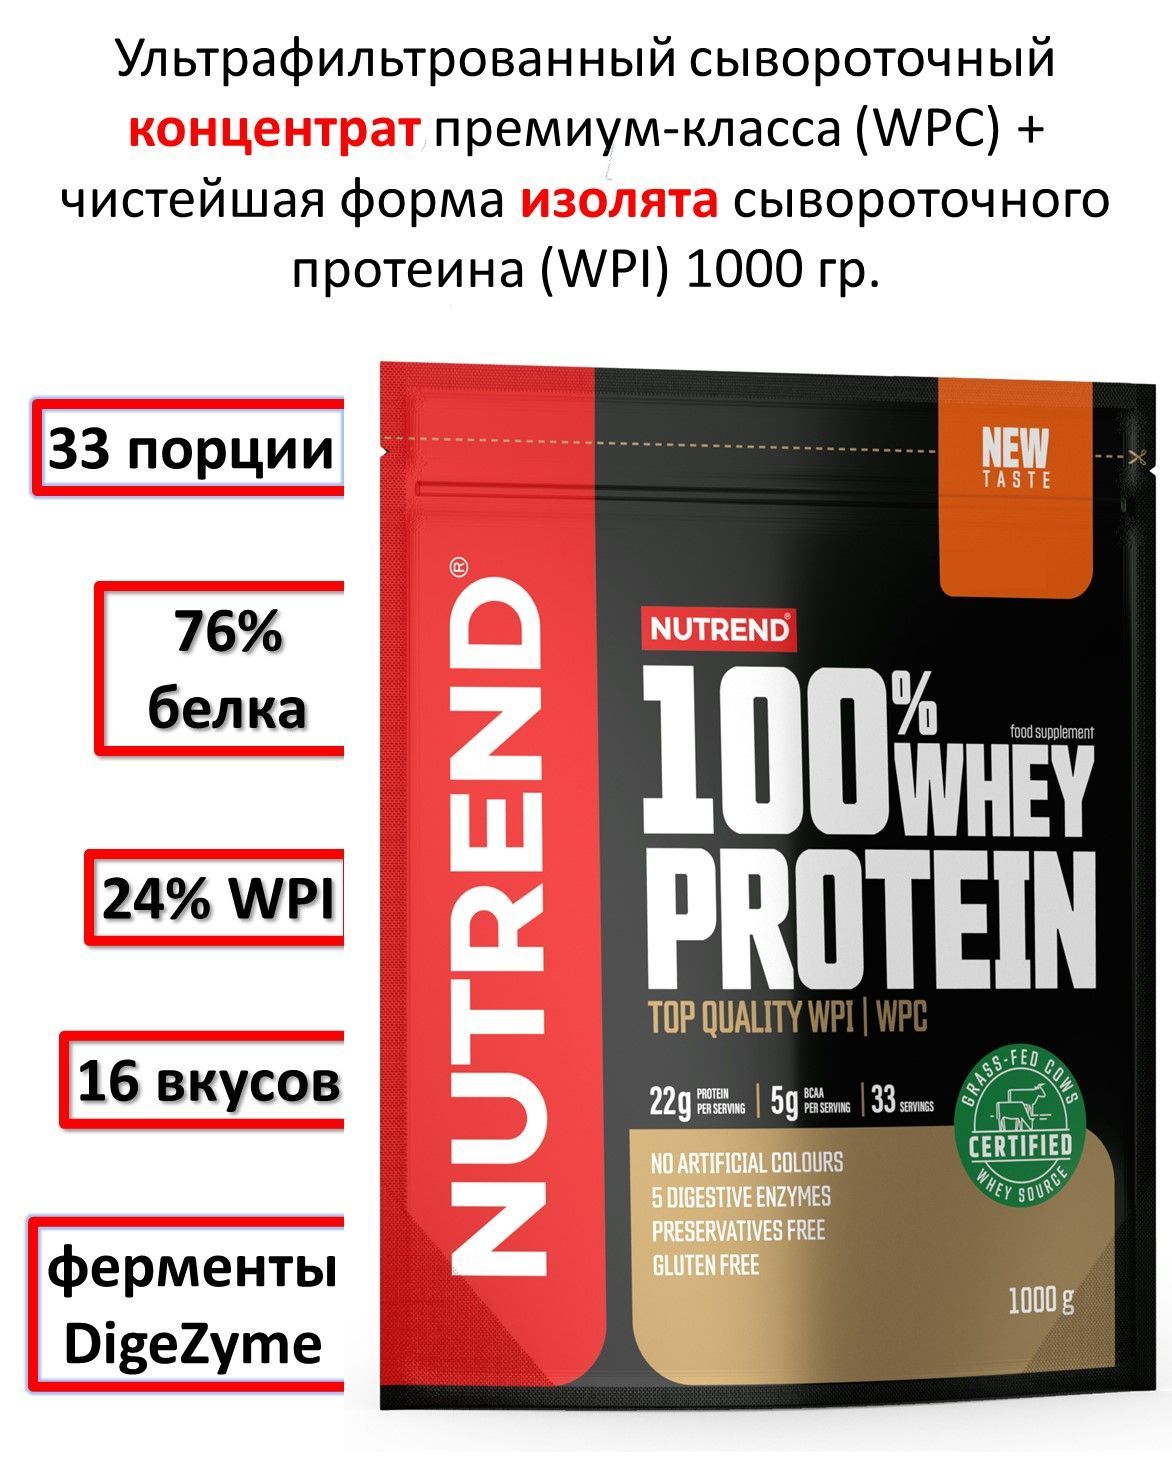 Концентрат Nutrend WHEY PROTEI протеин для набора мышечной массы, холодный кофе, 1000 г